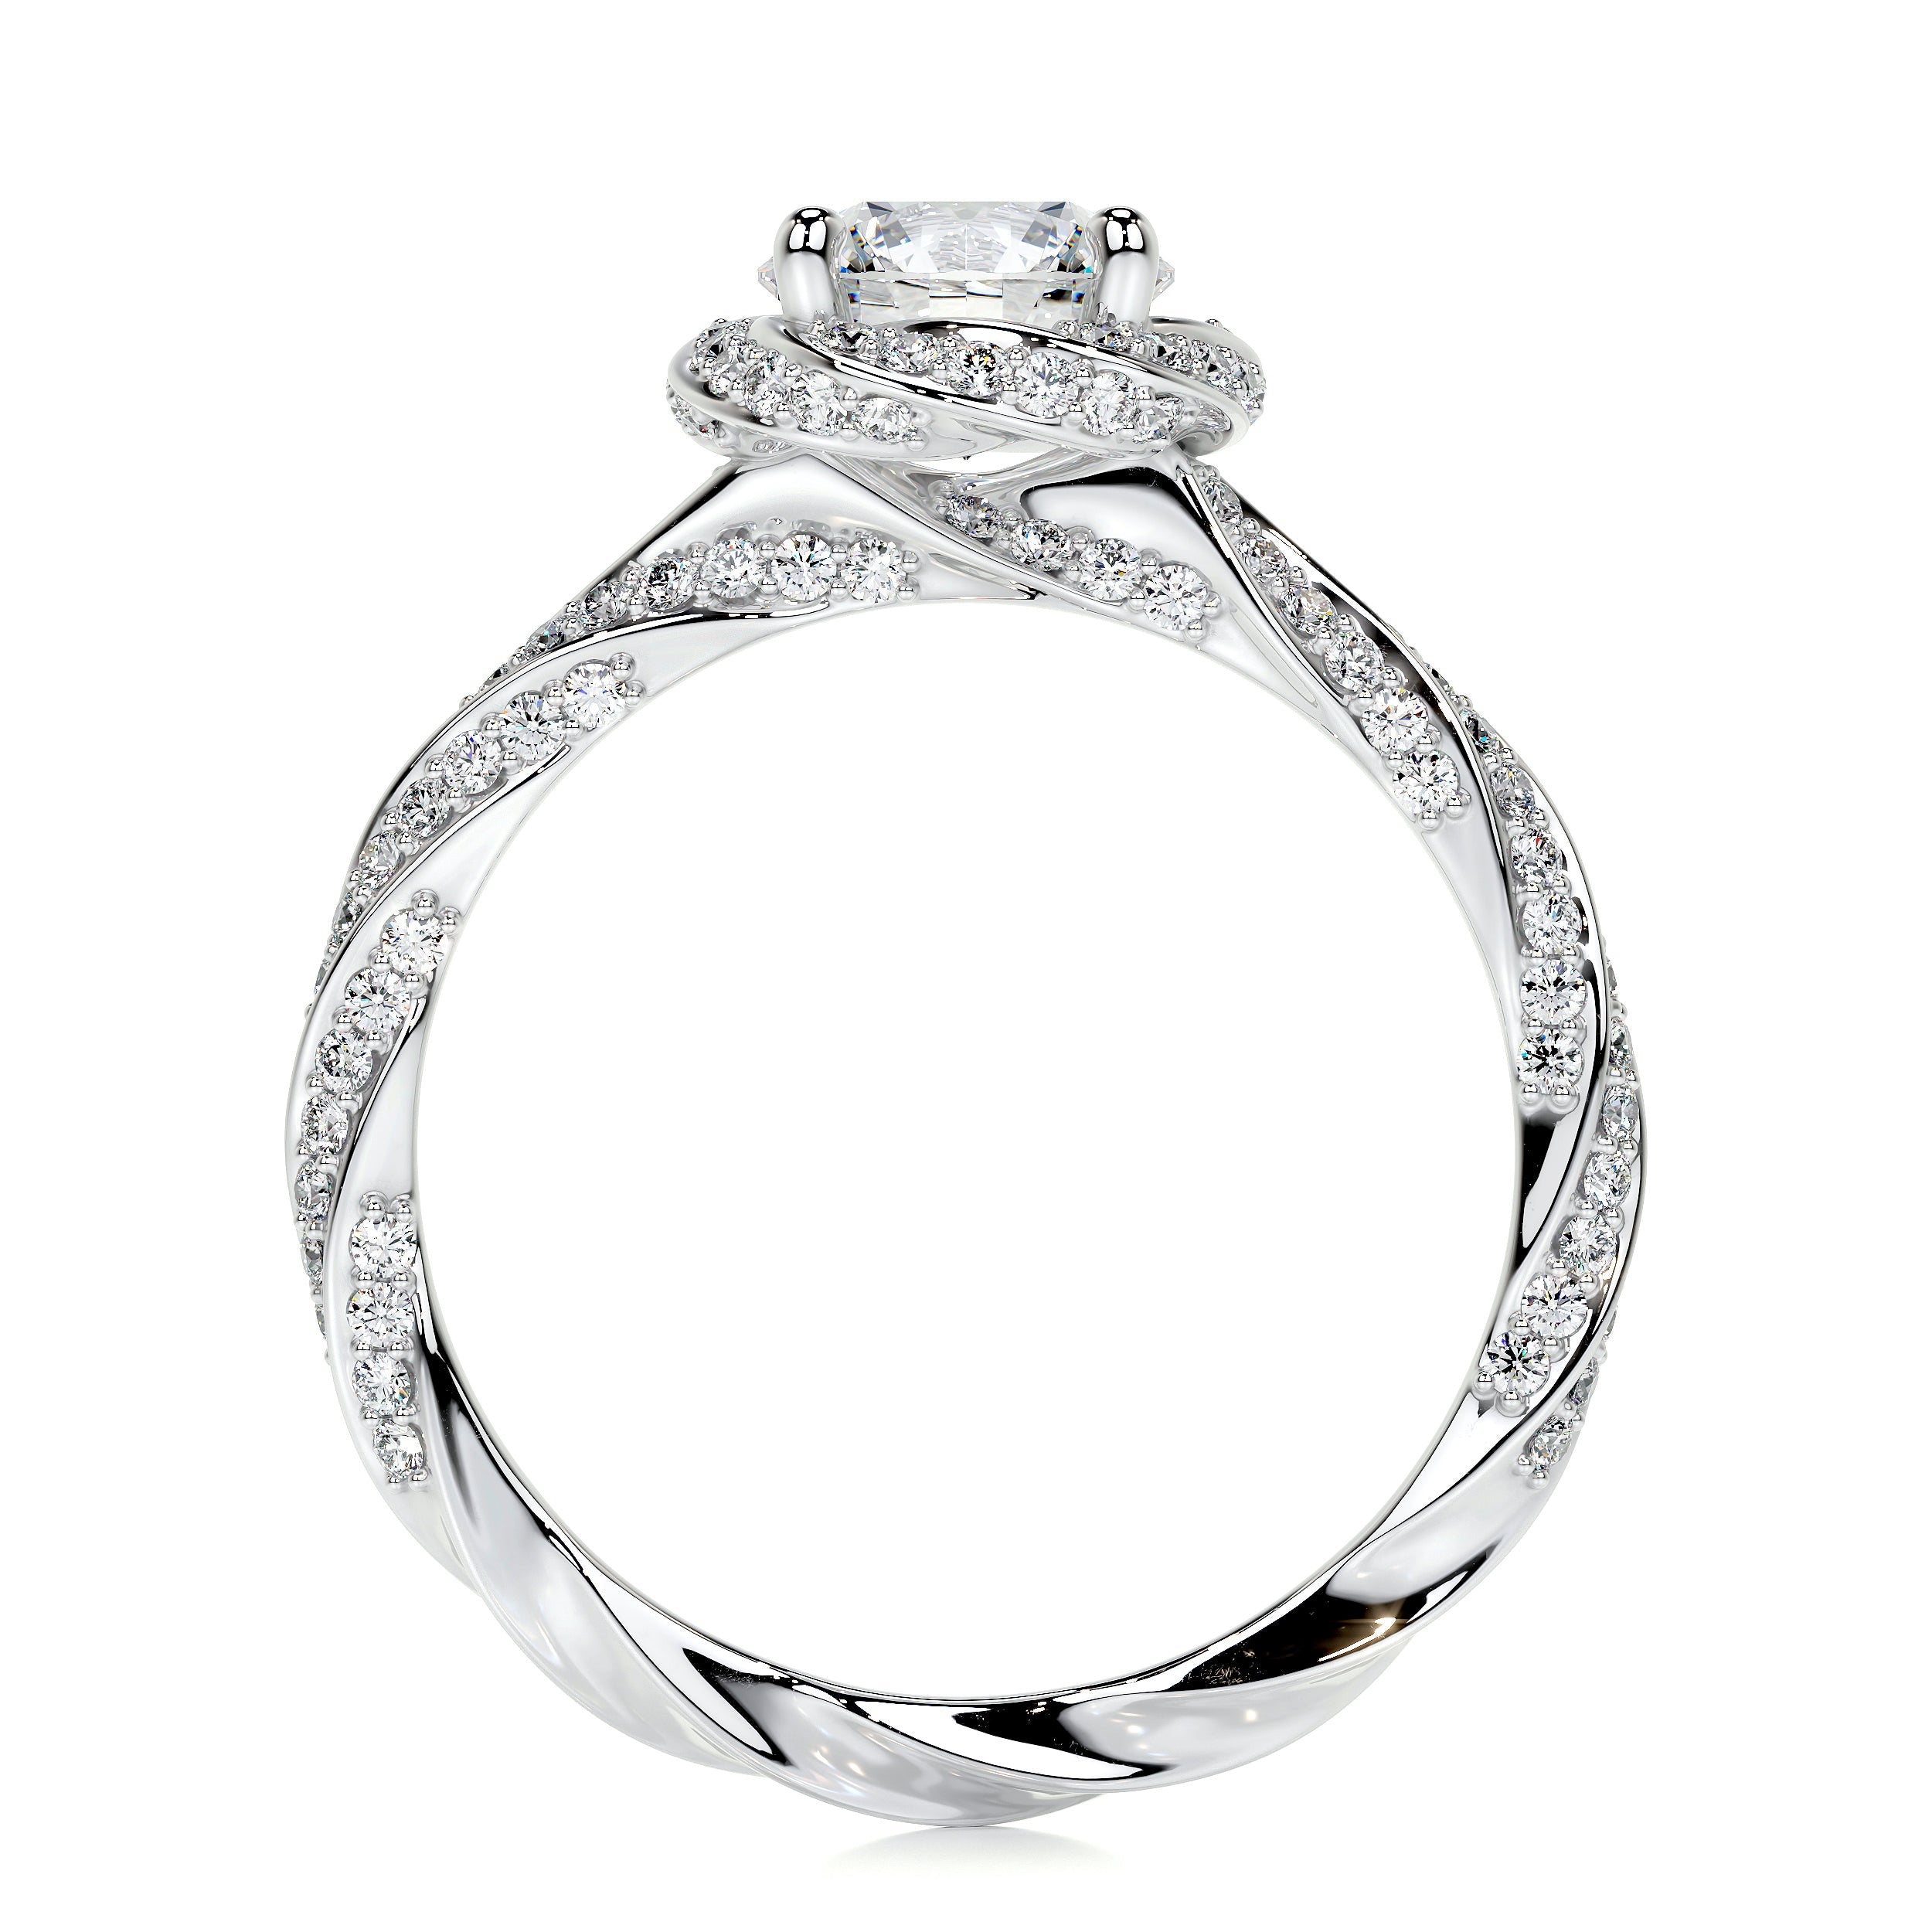 Joanne Lab Grown Diamond Ring   (1.50 Carat) -14K White Gold